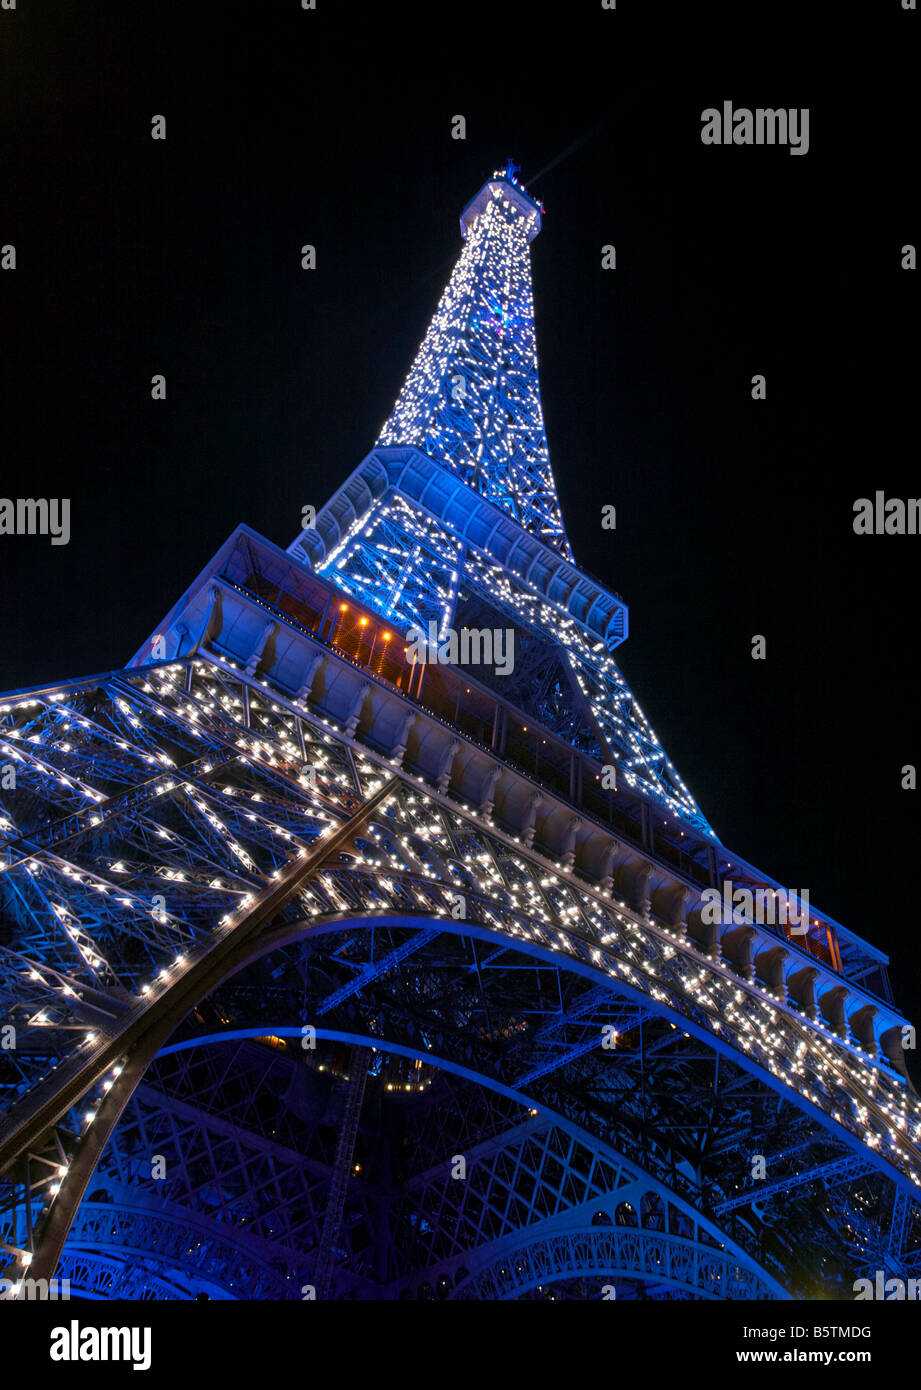 L'éclairage bleu de la Tour Eiffel au cours de la présidence française de l'UE de 2008 Paris France Banque D'Images